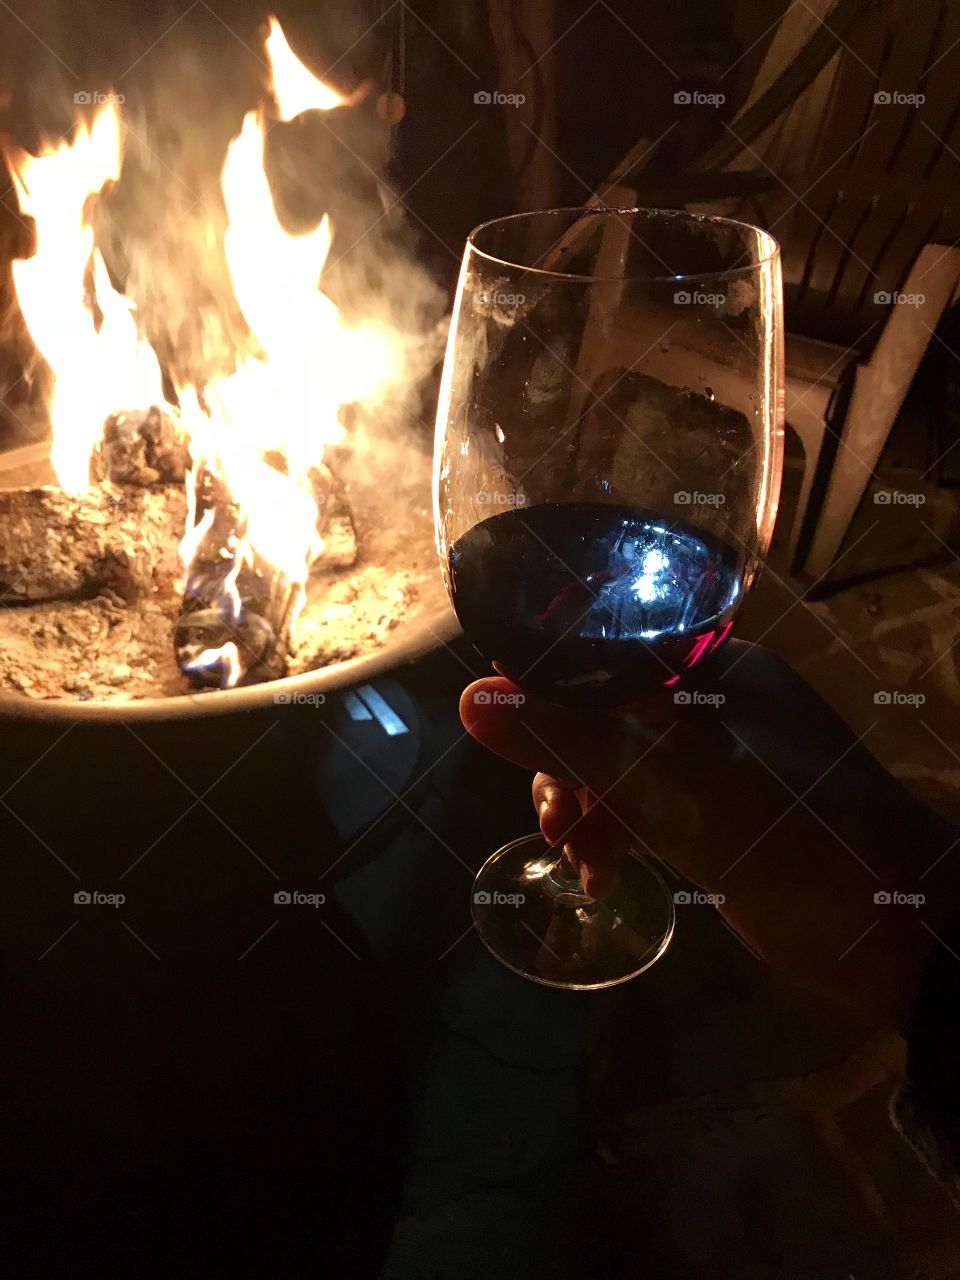 Winter wine fire